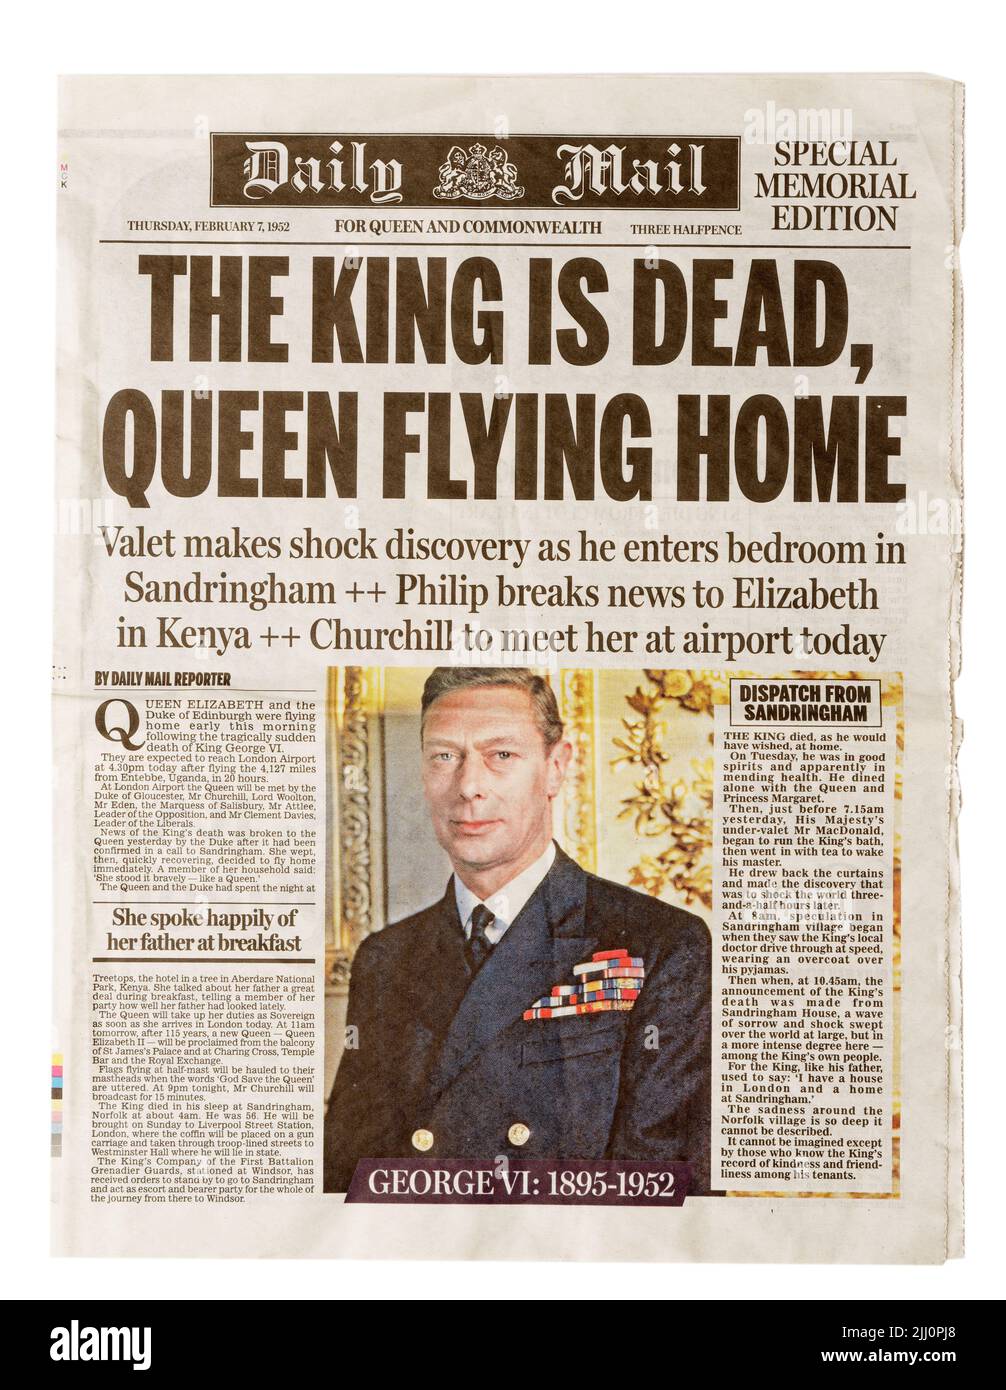 Une reproduction de la première page du Daily Mail du 7th février 1952 annonçant la mort du roi George VI Banque D'Images